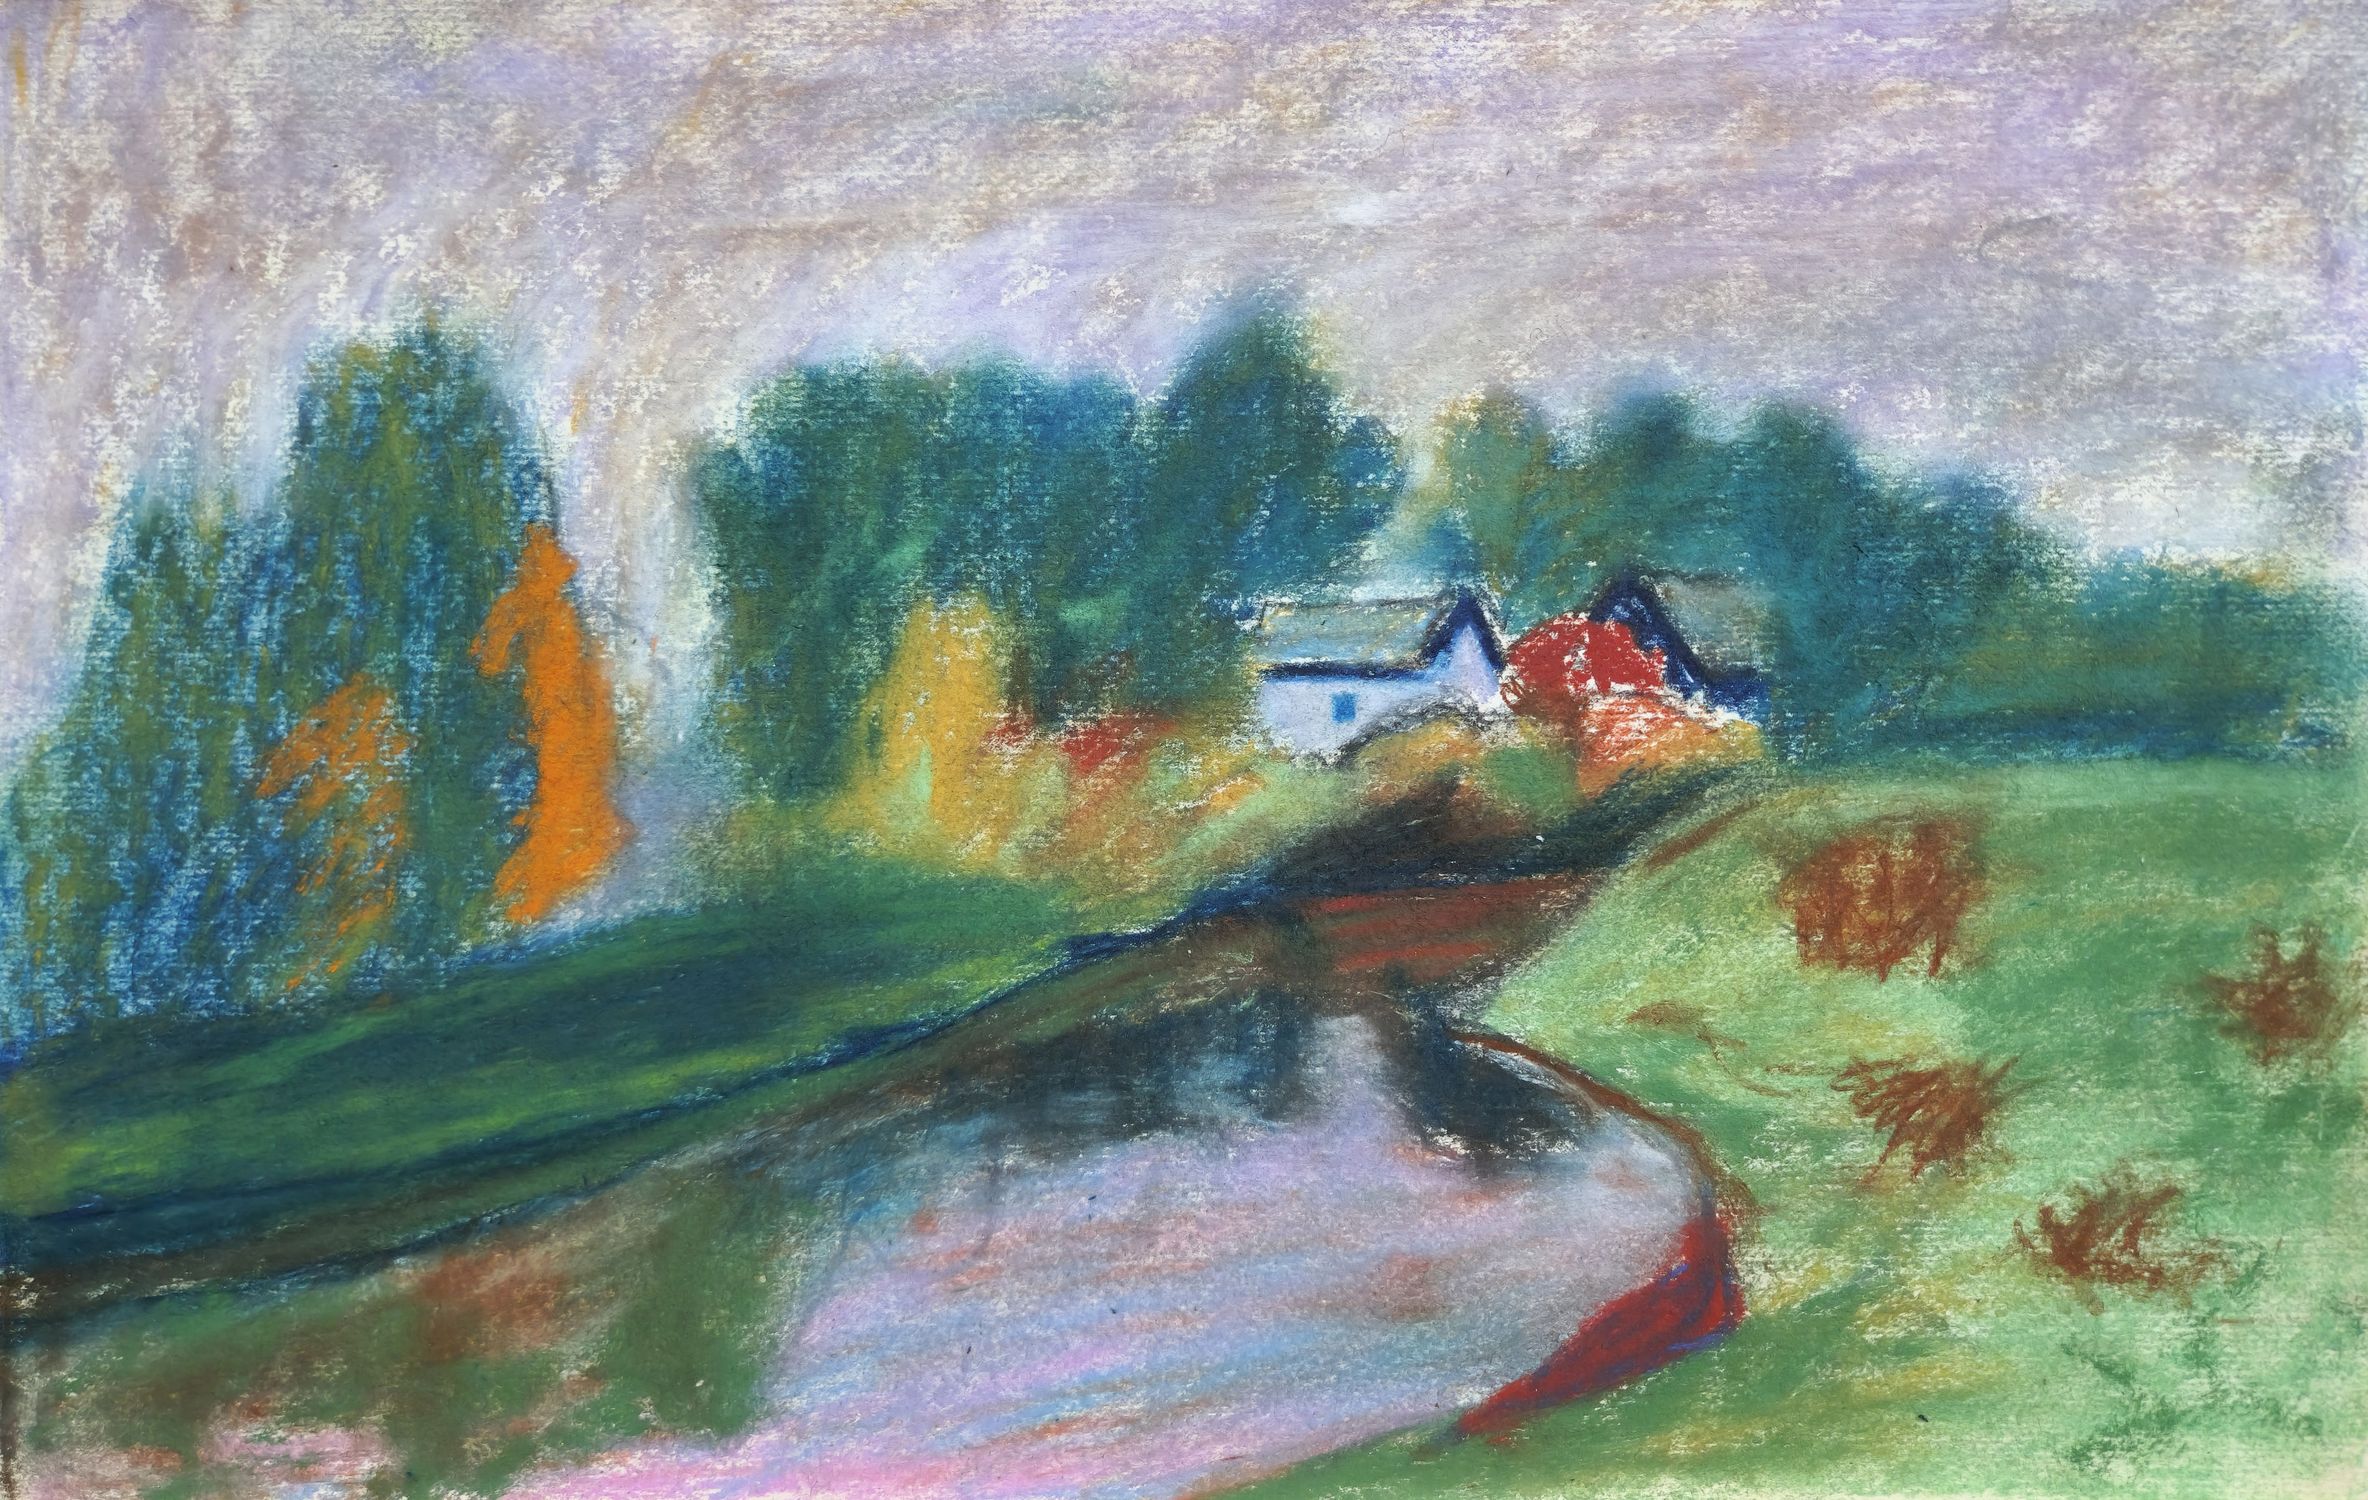 "The pond near the house"